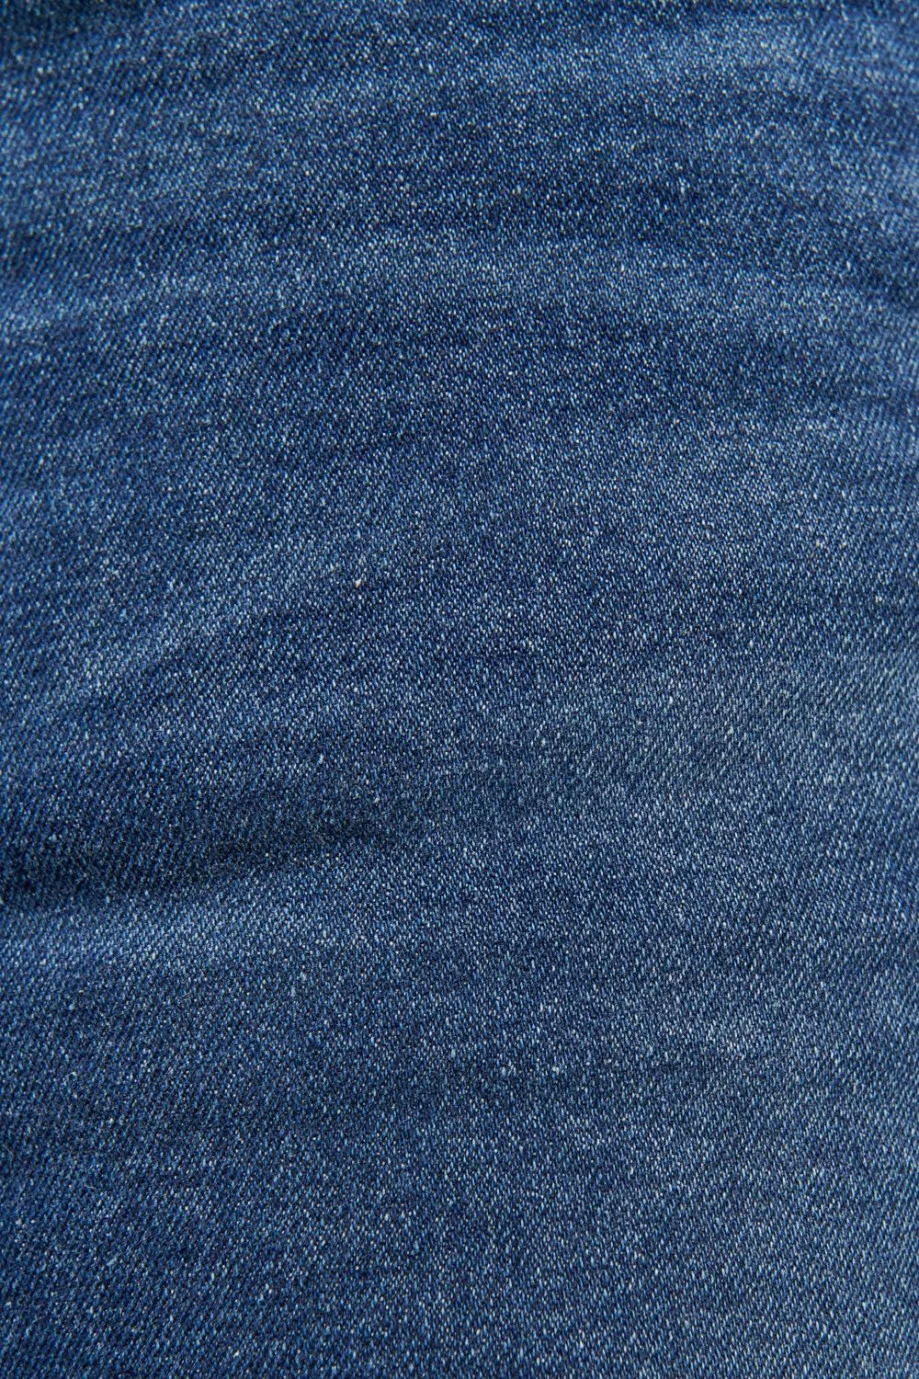 Jean slim tiro bajo azul oscuro con costuras en contraste